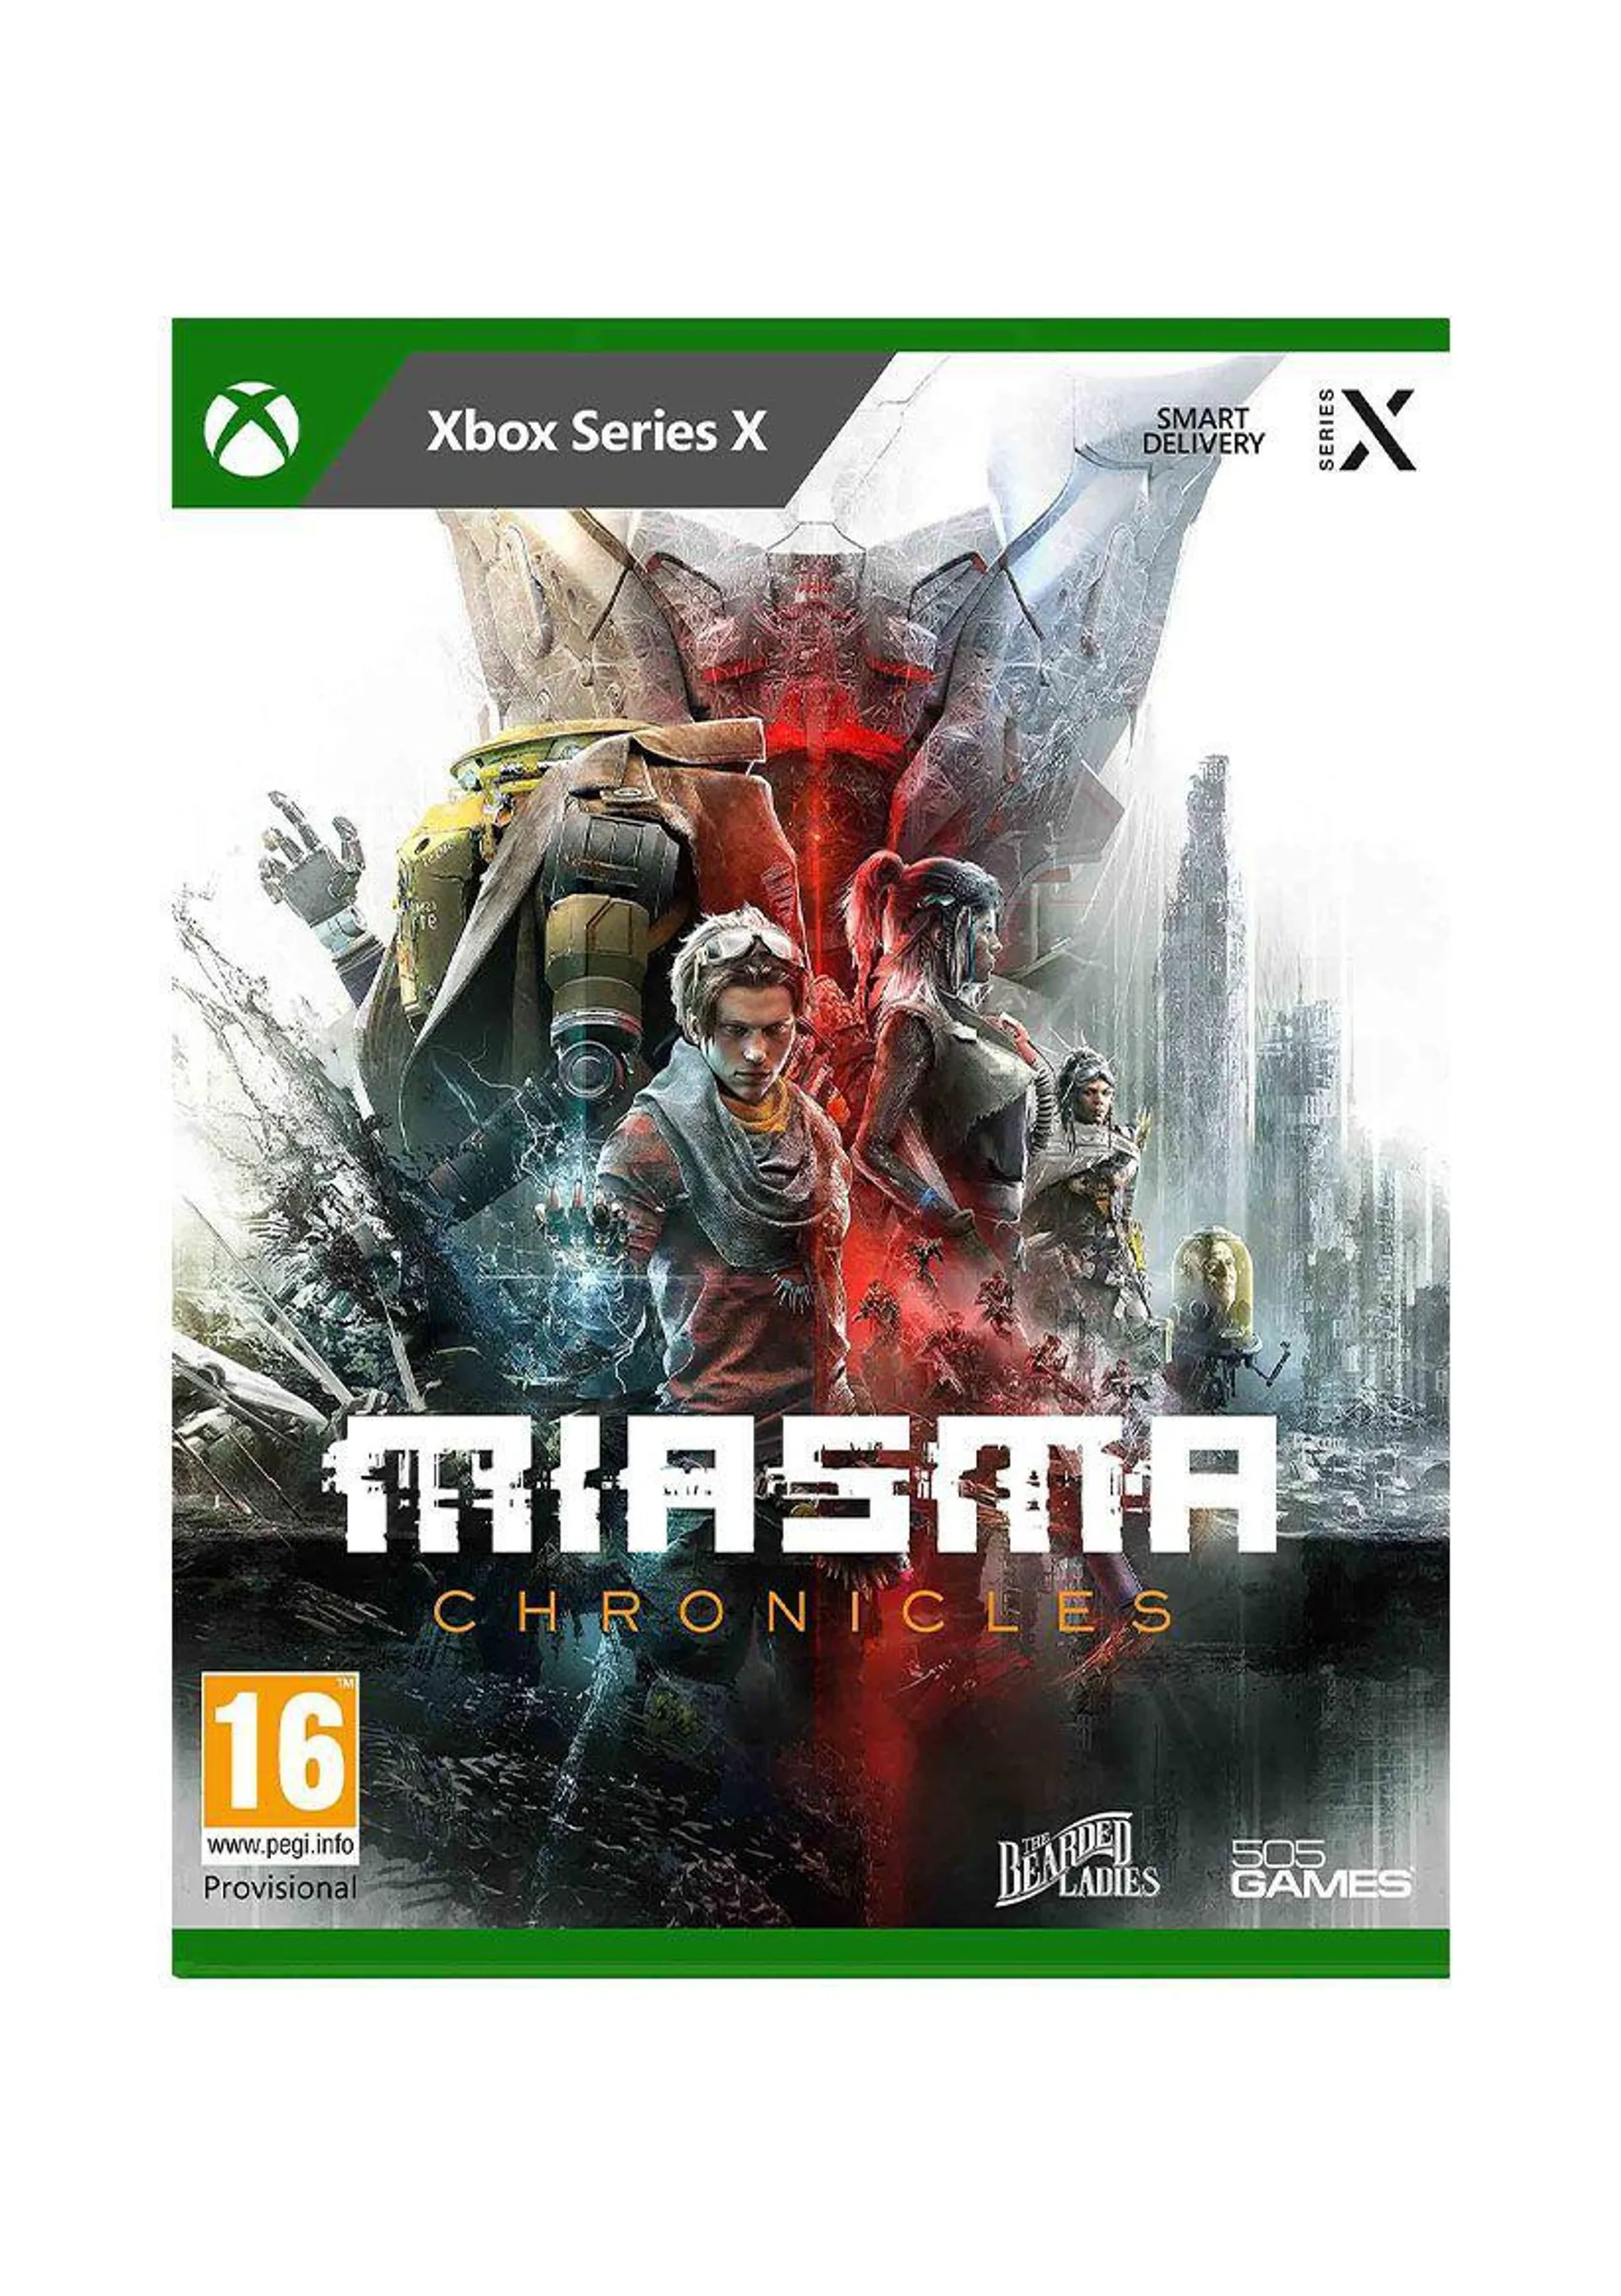 Miasma Chronicles on Xbox Series X | S